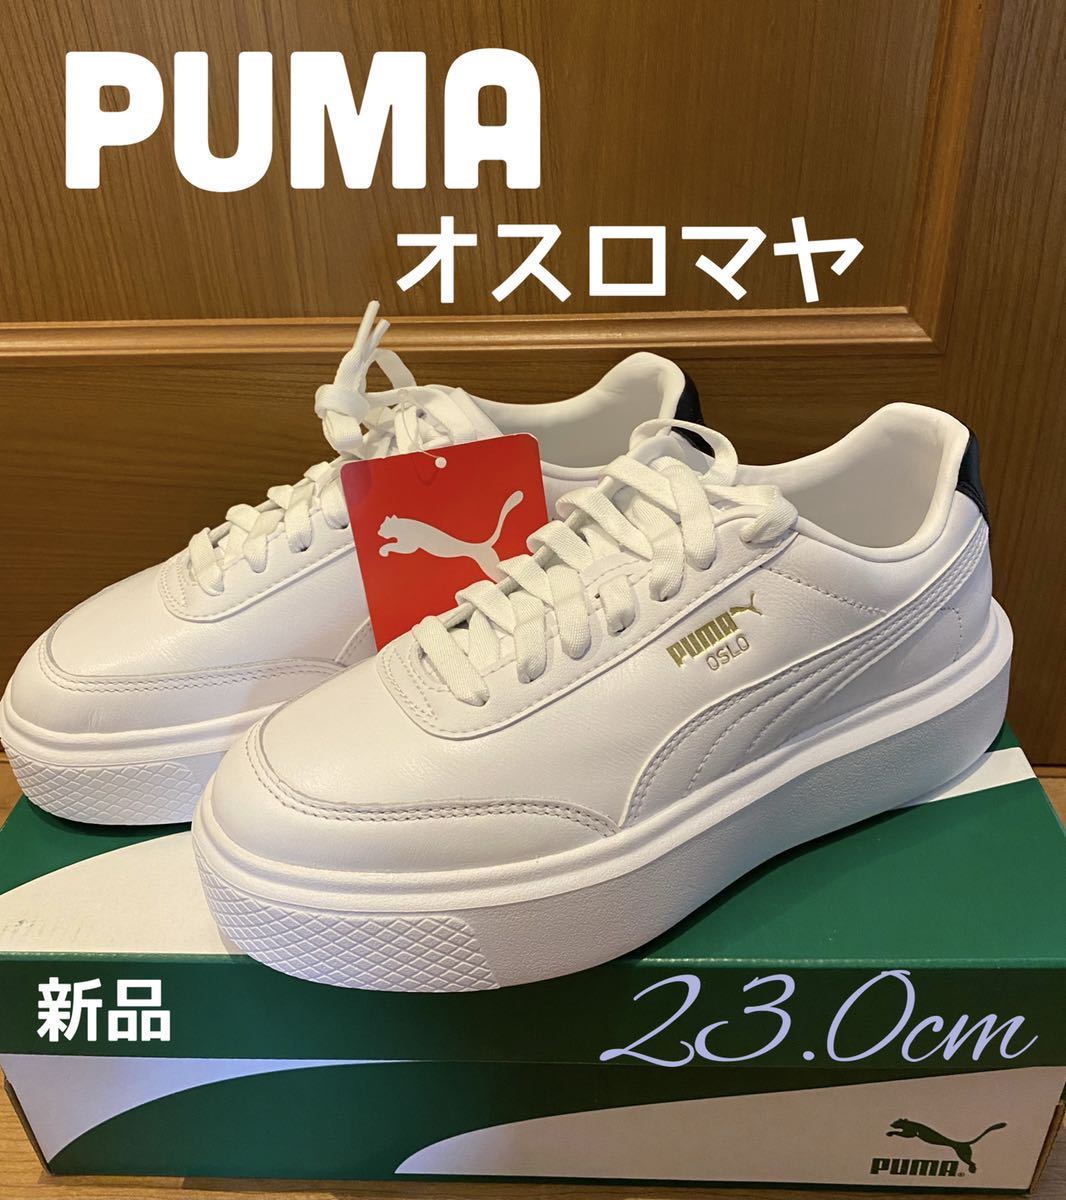 品多く PUMA 厚底スニーカー ホワイト23.0cm新品 マヤ オスロ プーマ OSLO 23.0cm